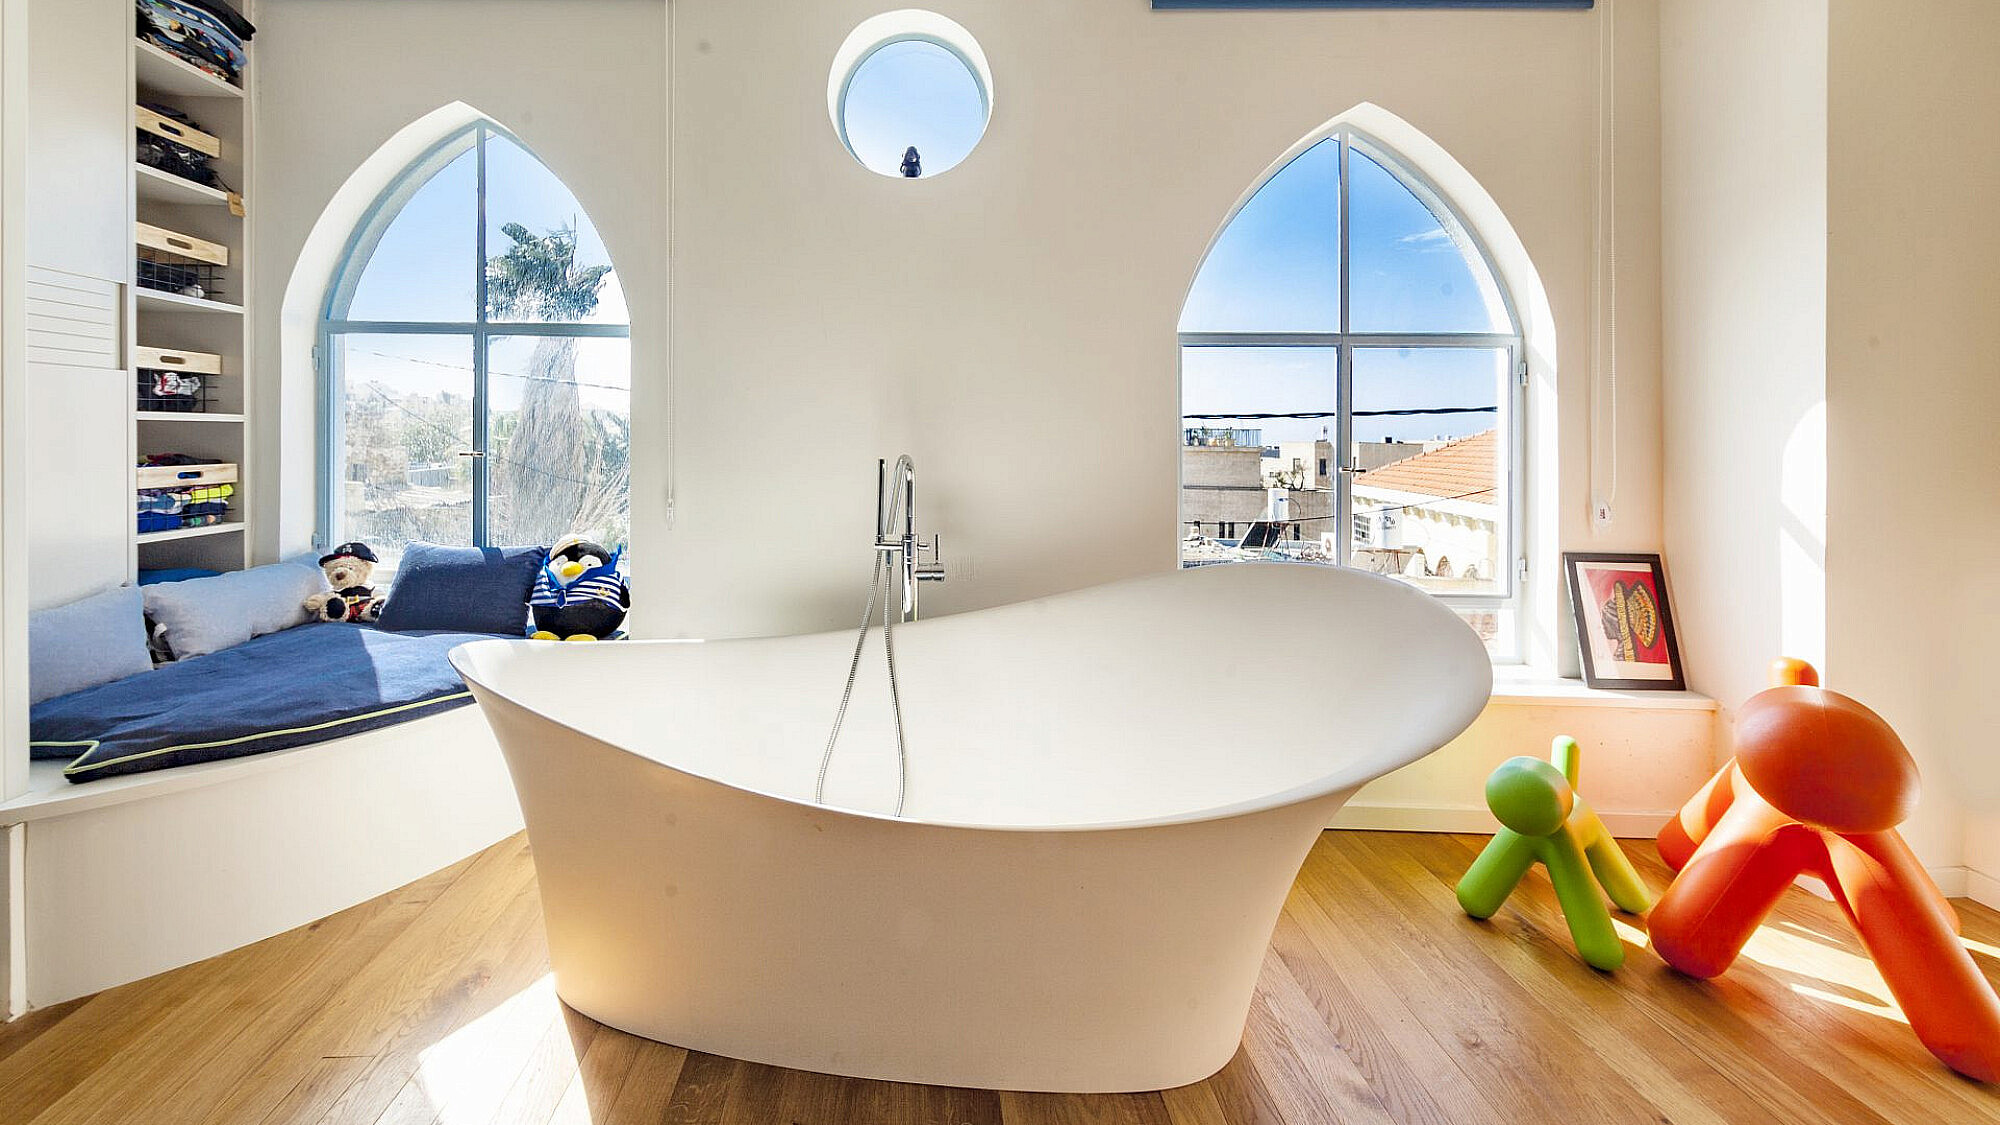 בית ביפו. אמבטיית פרי סטנדינג בחדר השינה. אדריכלות ועיצוב פנים: חנן דירקטור, סטיילינג: רחלי ברז'יק | צילום: יגאל הררי